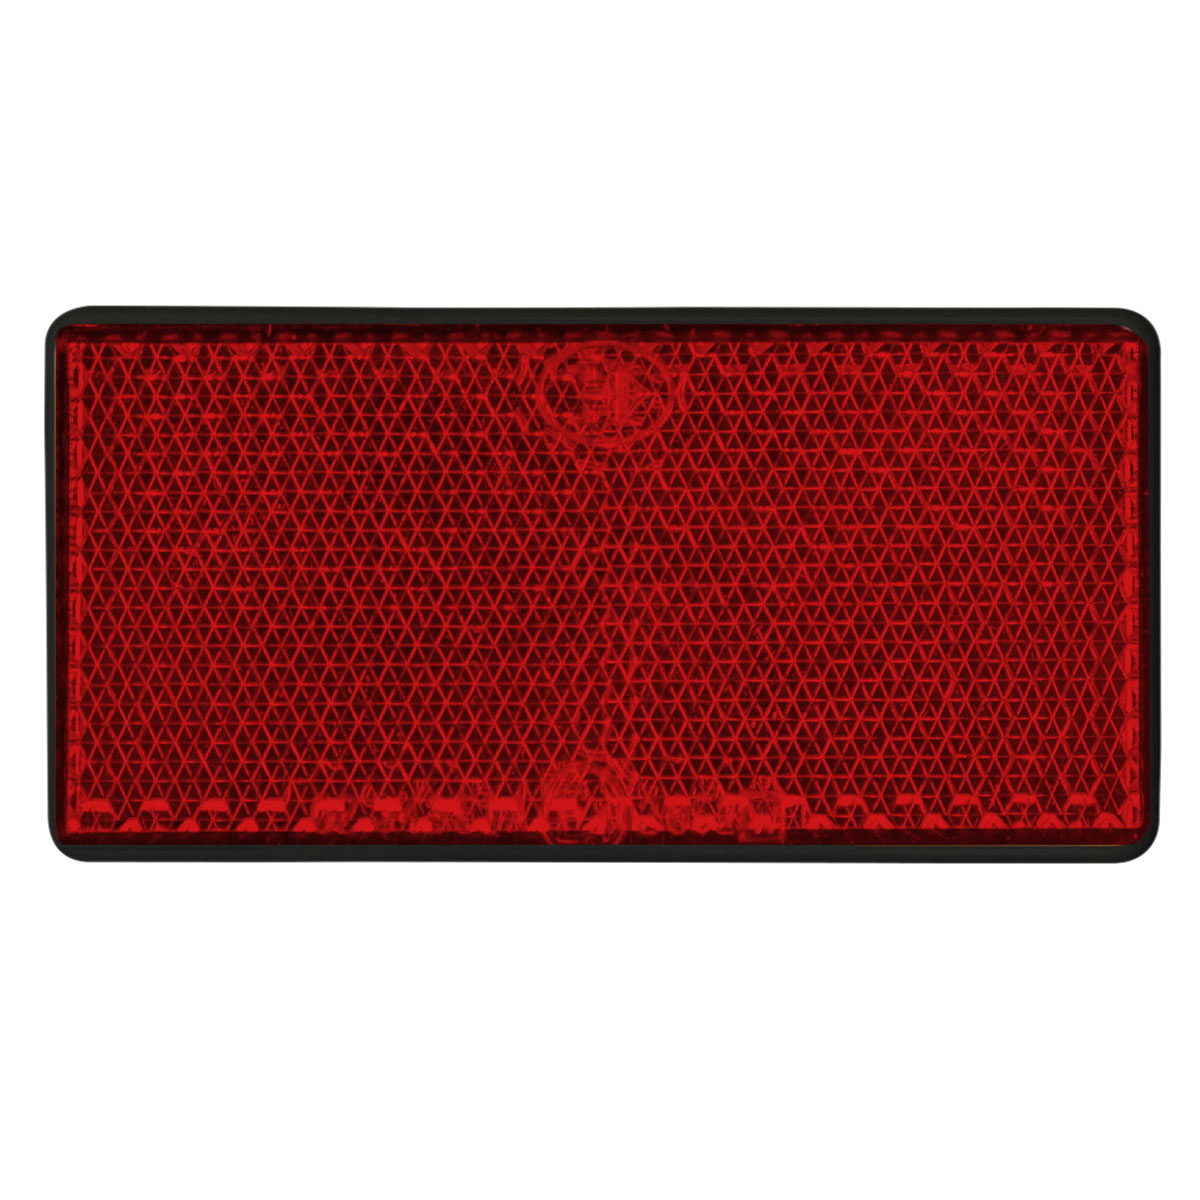 Reflektor rot selbstklebend 126x34mm -  - Ersatzteile für L, 0,60  €